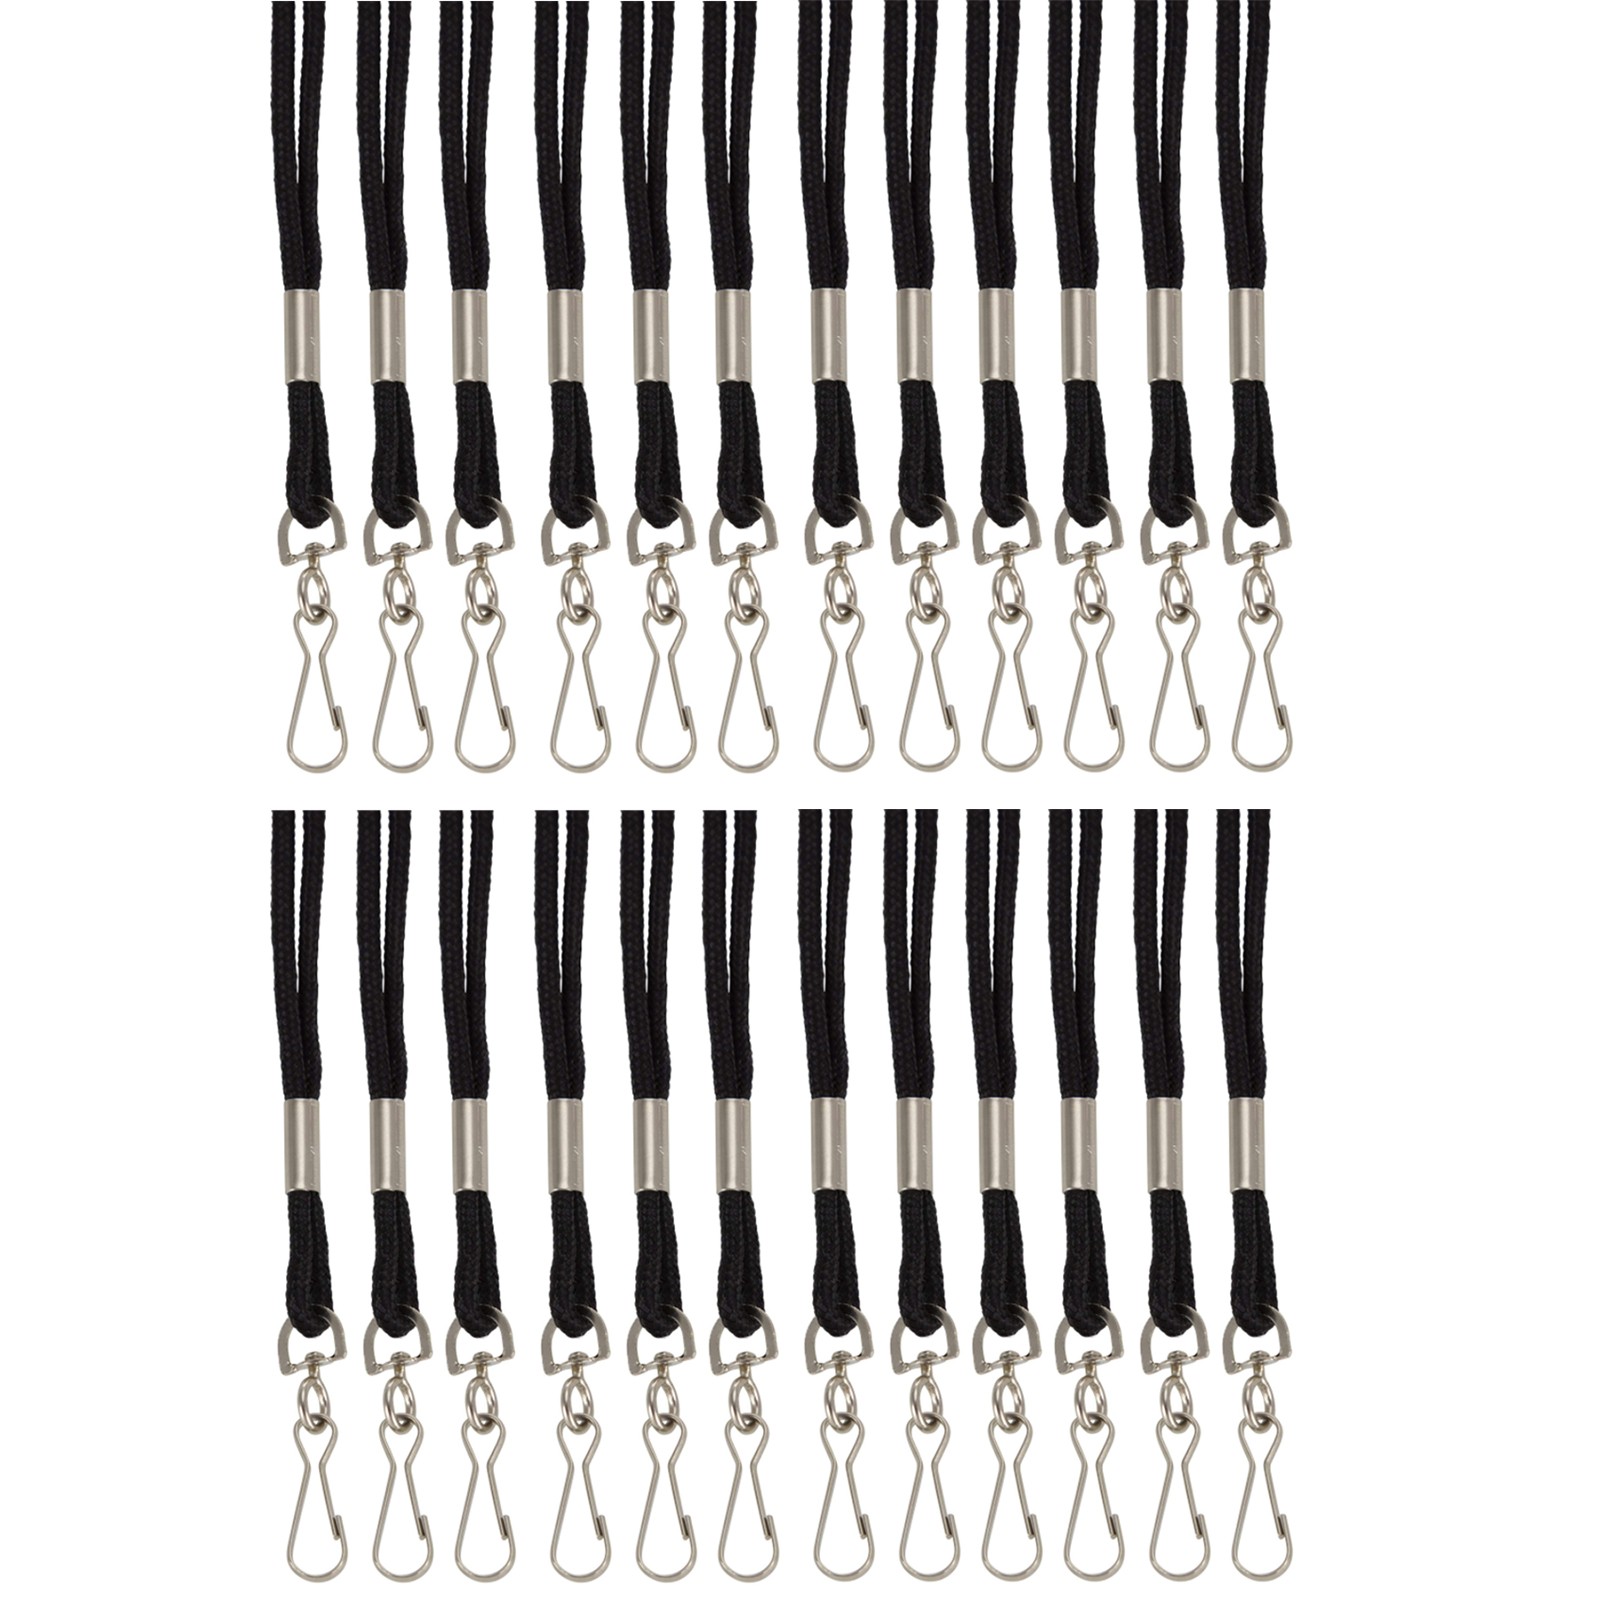 Standard Lanyard Hook Rope Style, Black, Pack of 24